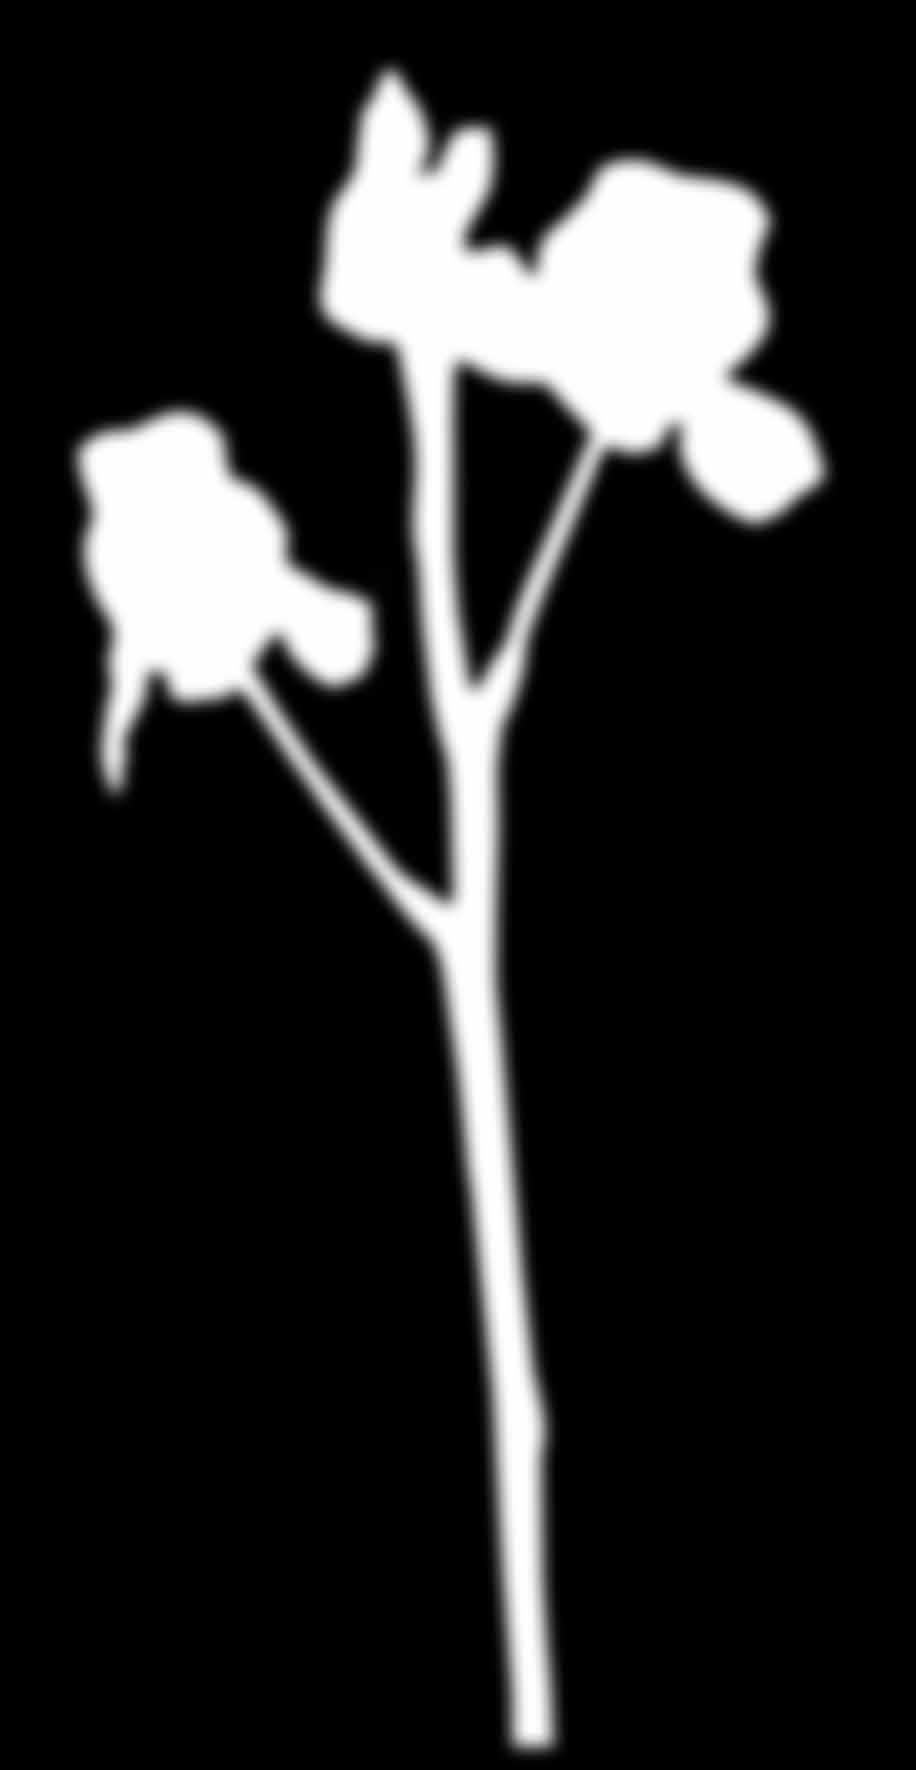 (Utricularia australis) vertreten und vorwiegend in Stillgewässern der Tallagen anzutreffen. Seine Besonderheit sind die rundlichen Fangblasen auf seinen feinzerteilten Unterwasserblättern.